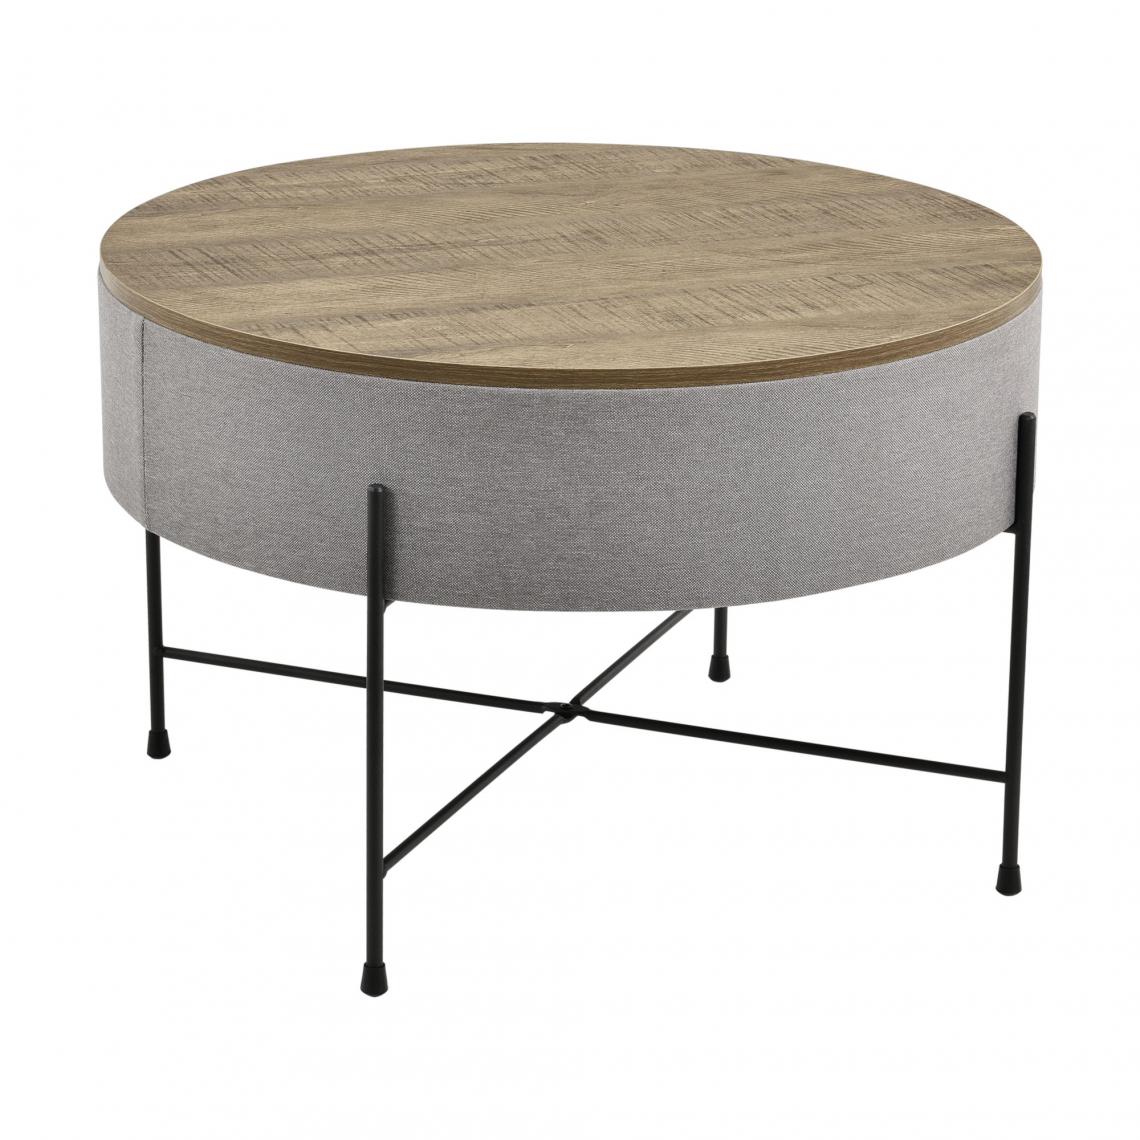 Helloshop26 - Table basse ronde avec plateau amovible panneaux de particules textile métal 40 x 60 cm bois gris noir 03_0004151 - Tables basses